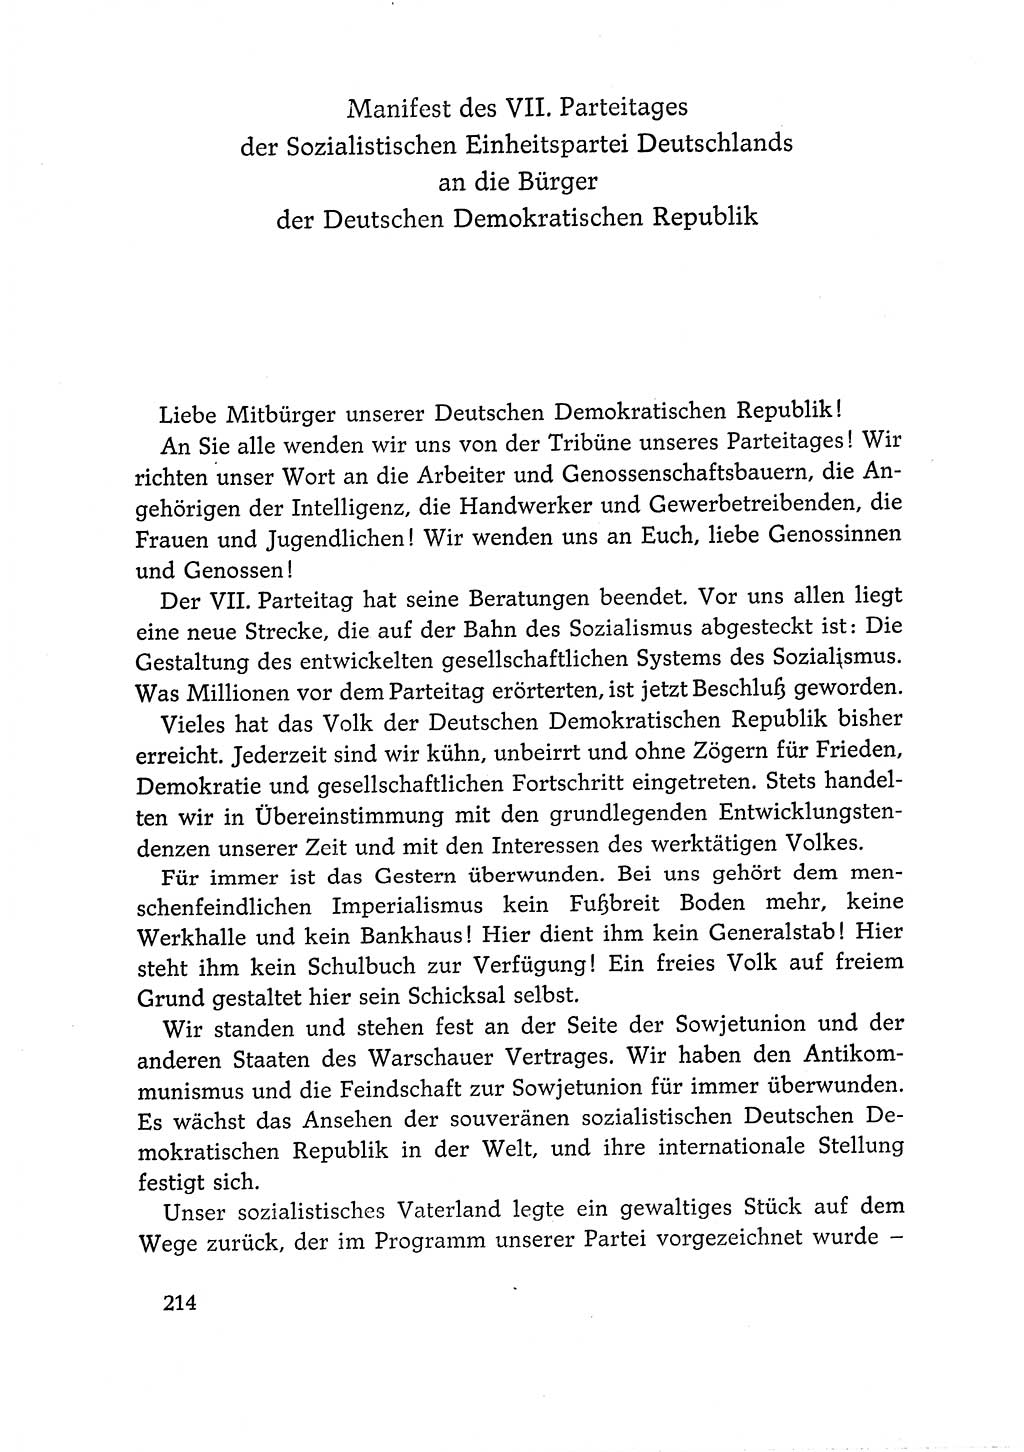 Dokumente der Sozialistischen Einheitspartei Deutschlands (SED) [Deutsche Demokratische Republik (DDR)] 1966-1967, Seite 214 (Dok. SED DDR 1966-1967, S. 214)